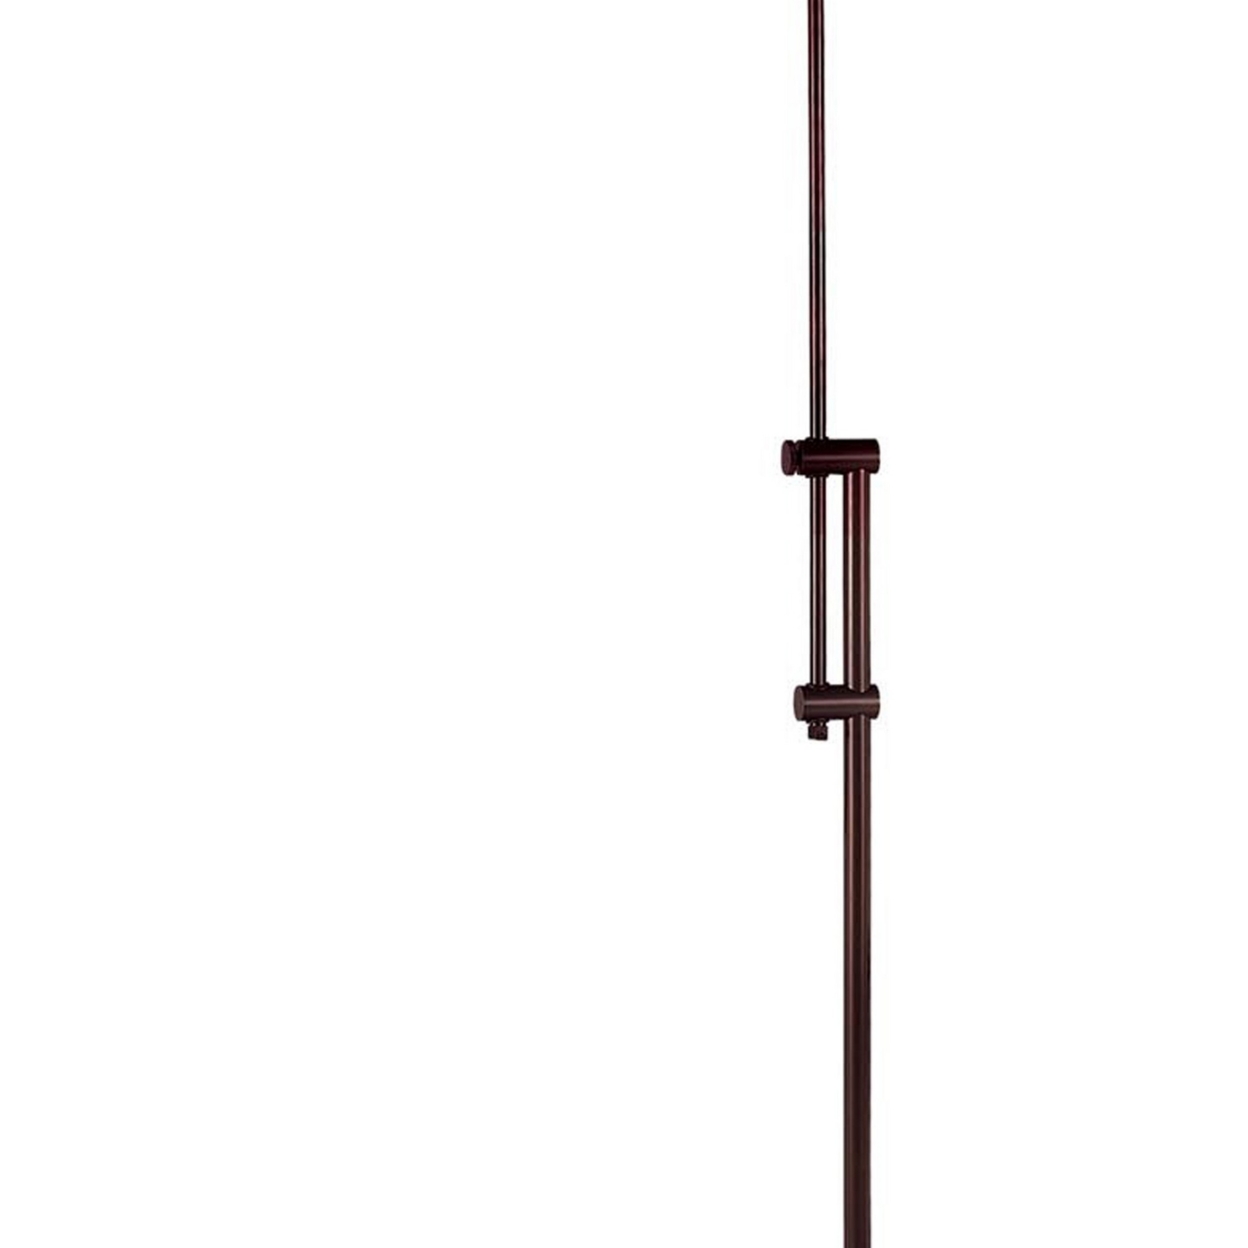 3 Way Metal Floor Lamp With And Adjustable Height Mechanism, Brown- Saltoro Sherpi